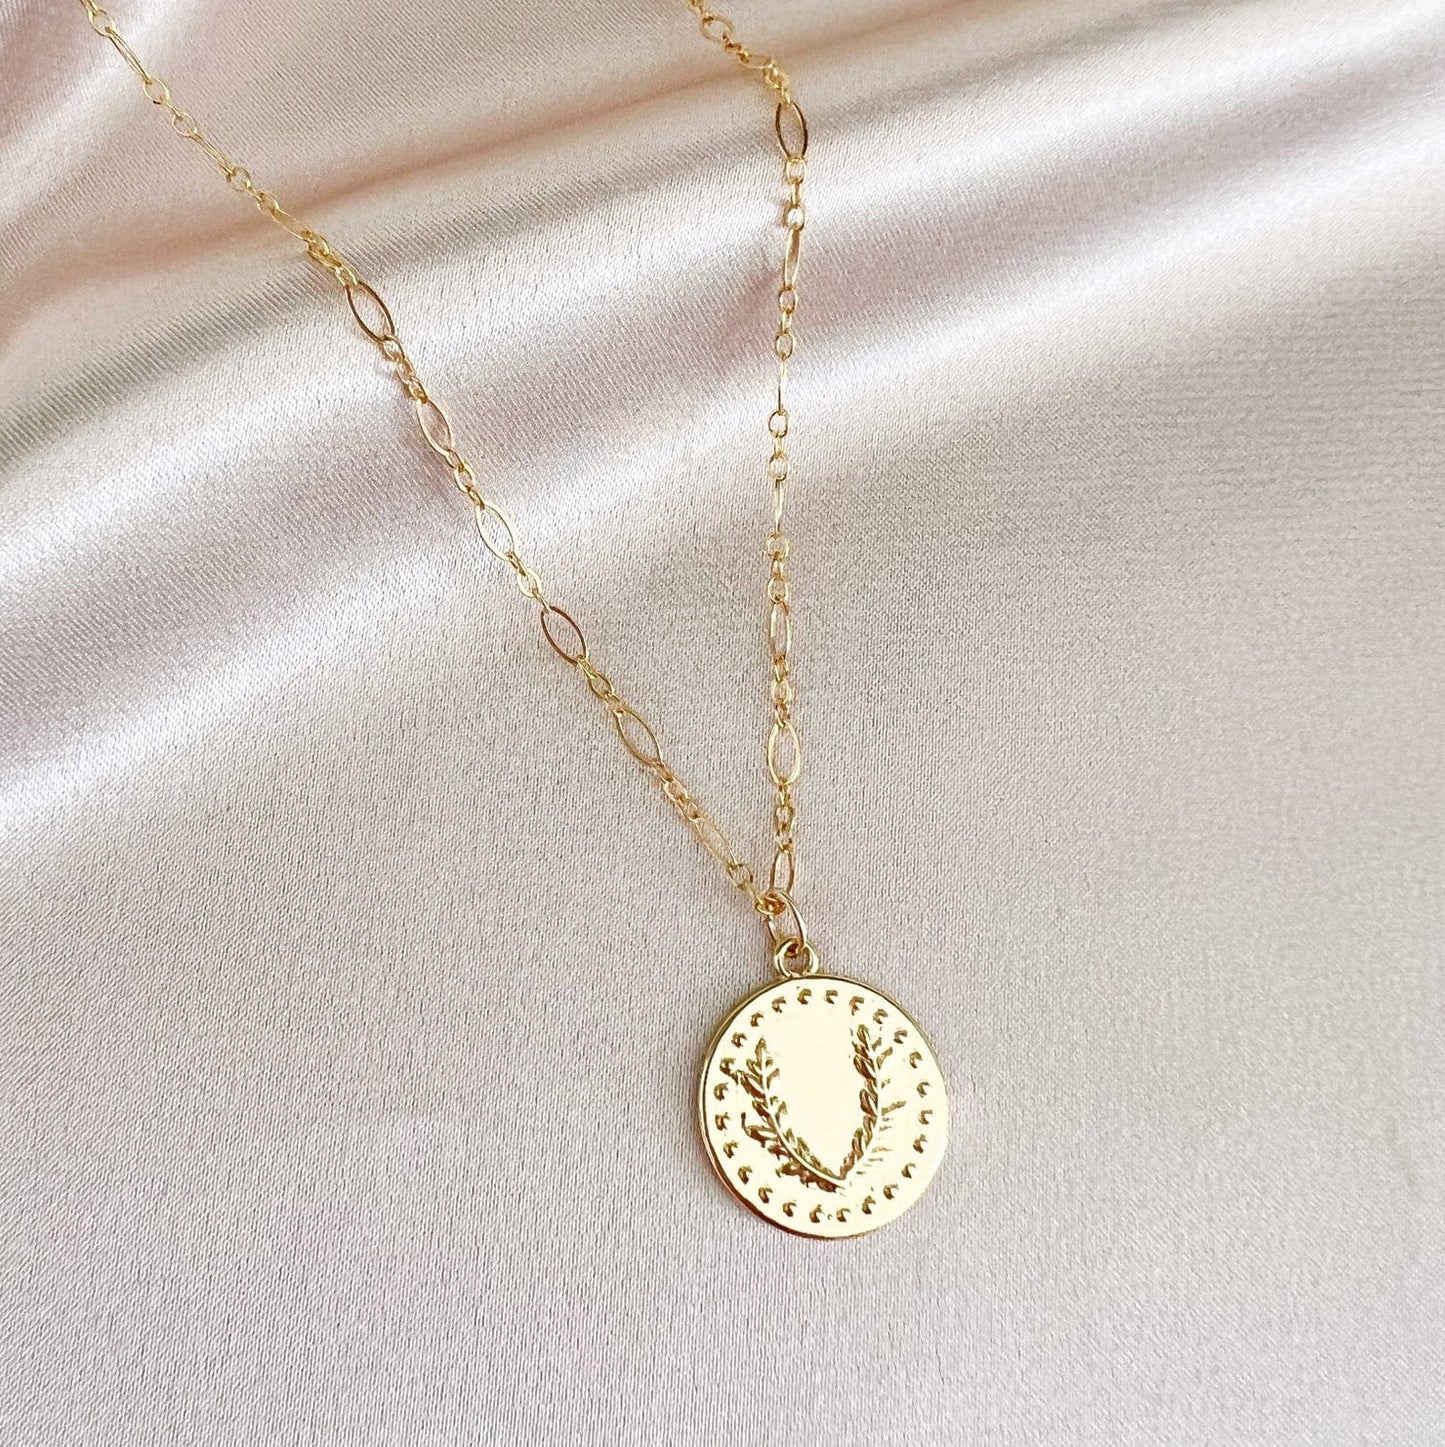 NKL-GF Laurel Vintage Style Chain Necklace Gold Filled